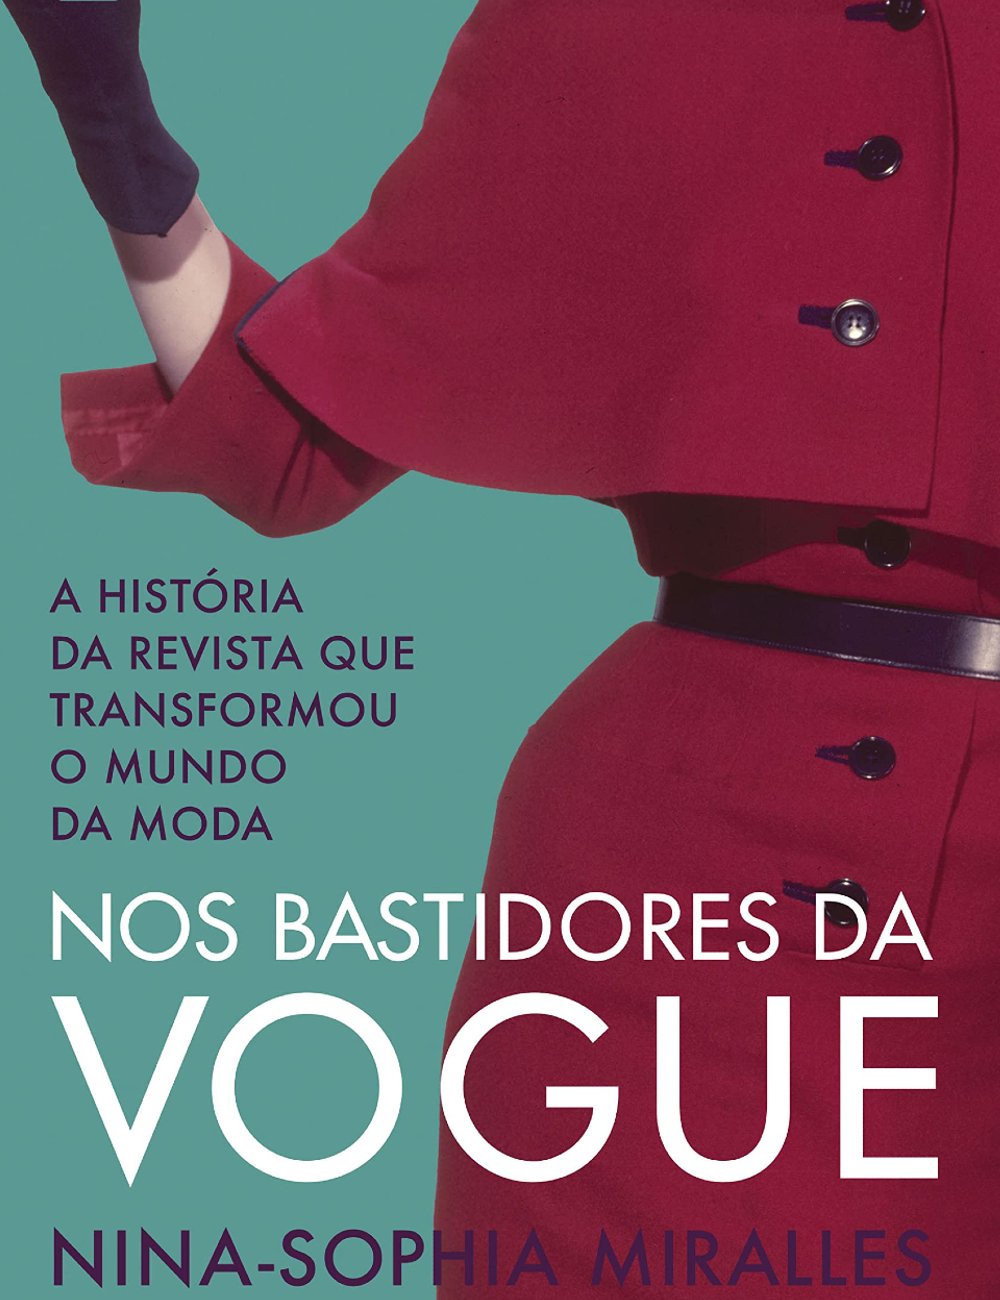 Nos Bastidores da Vogue - livros de moda - livros de moda - livros de moda - livros de moda - https://stealthelook.com.br